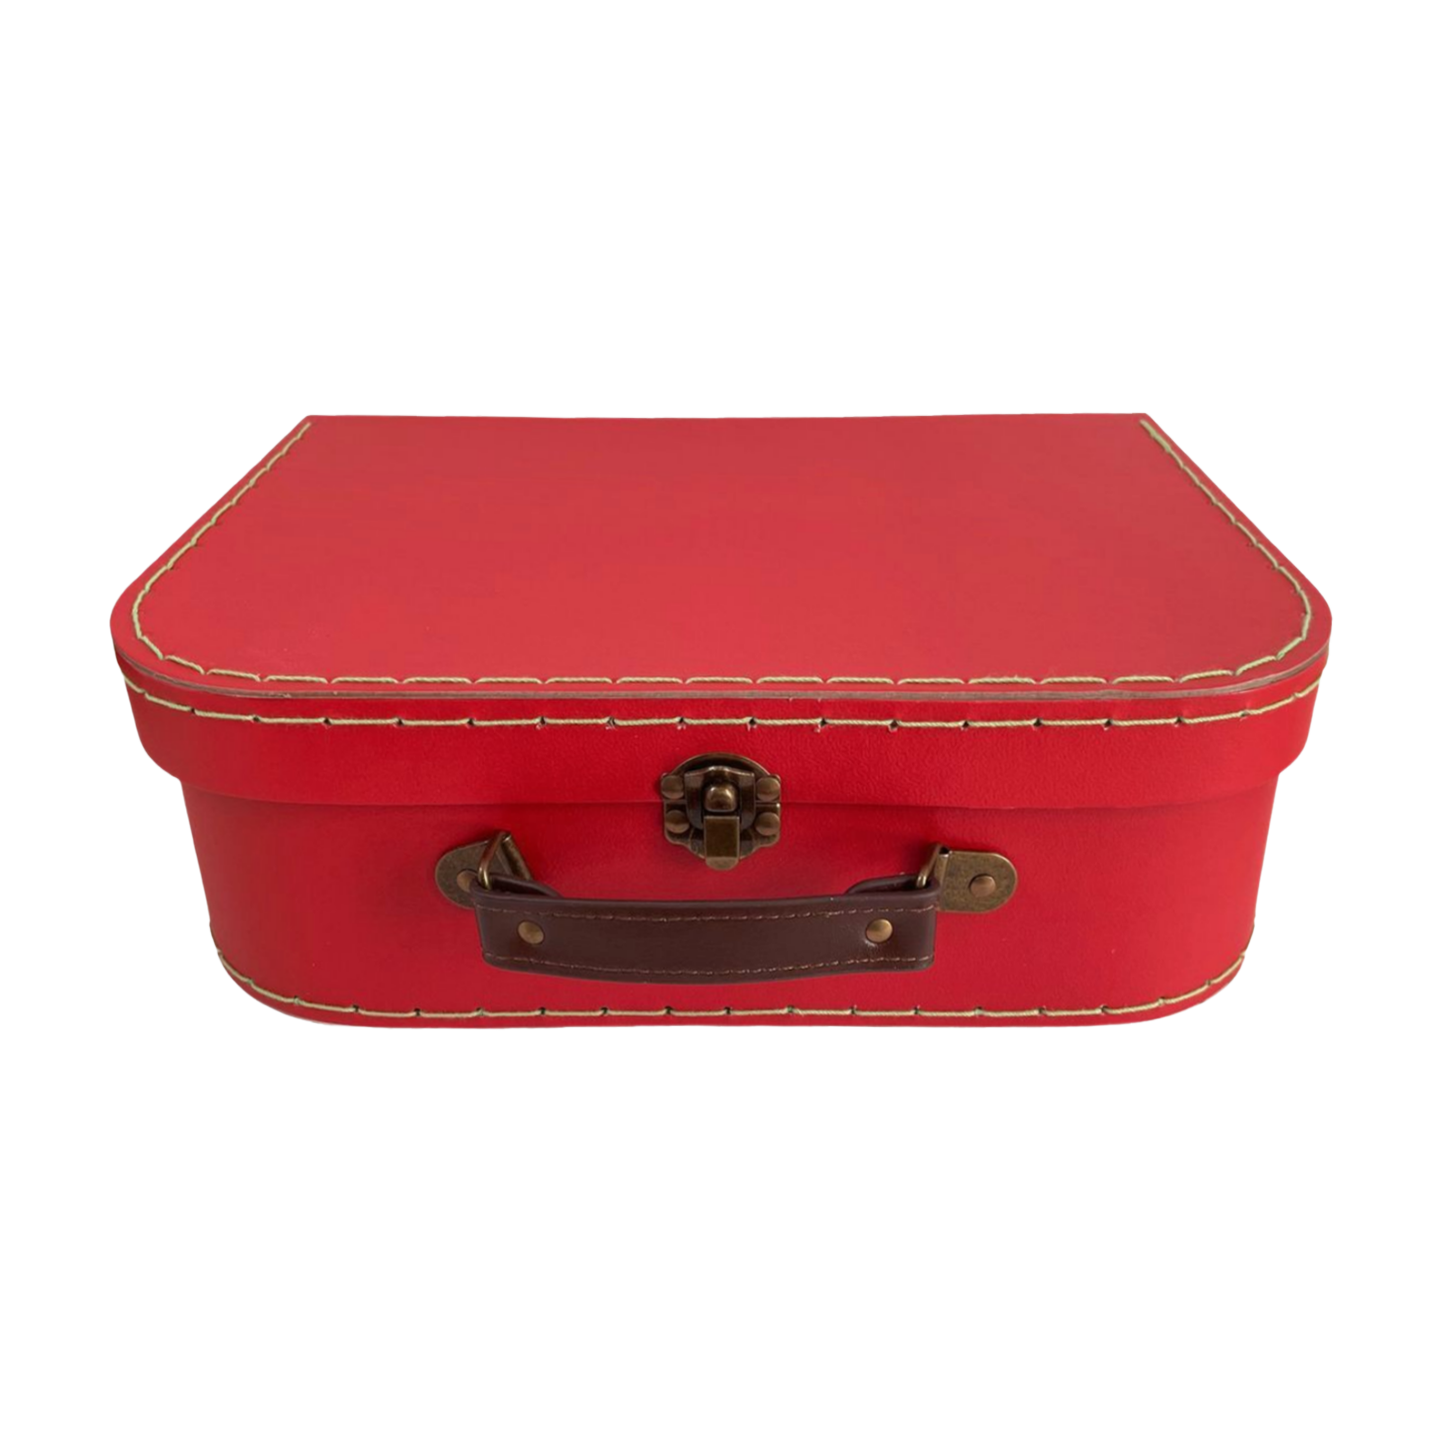 Kit Viaggio – My World in a Box